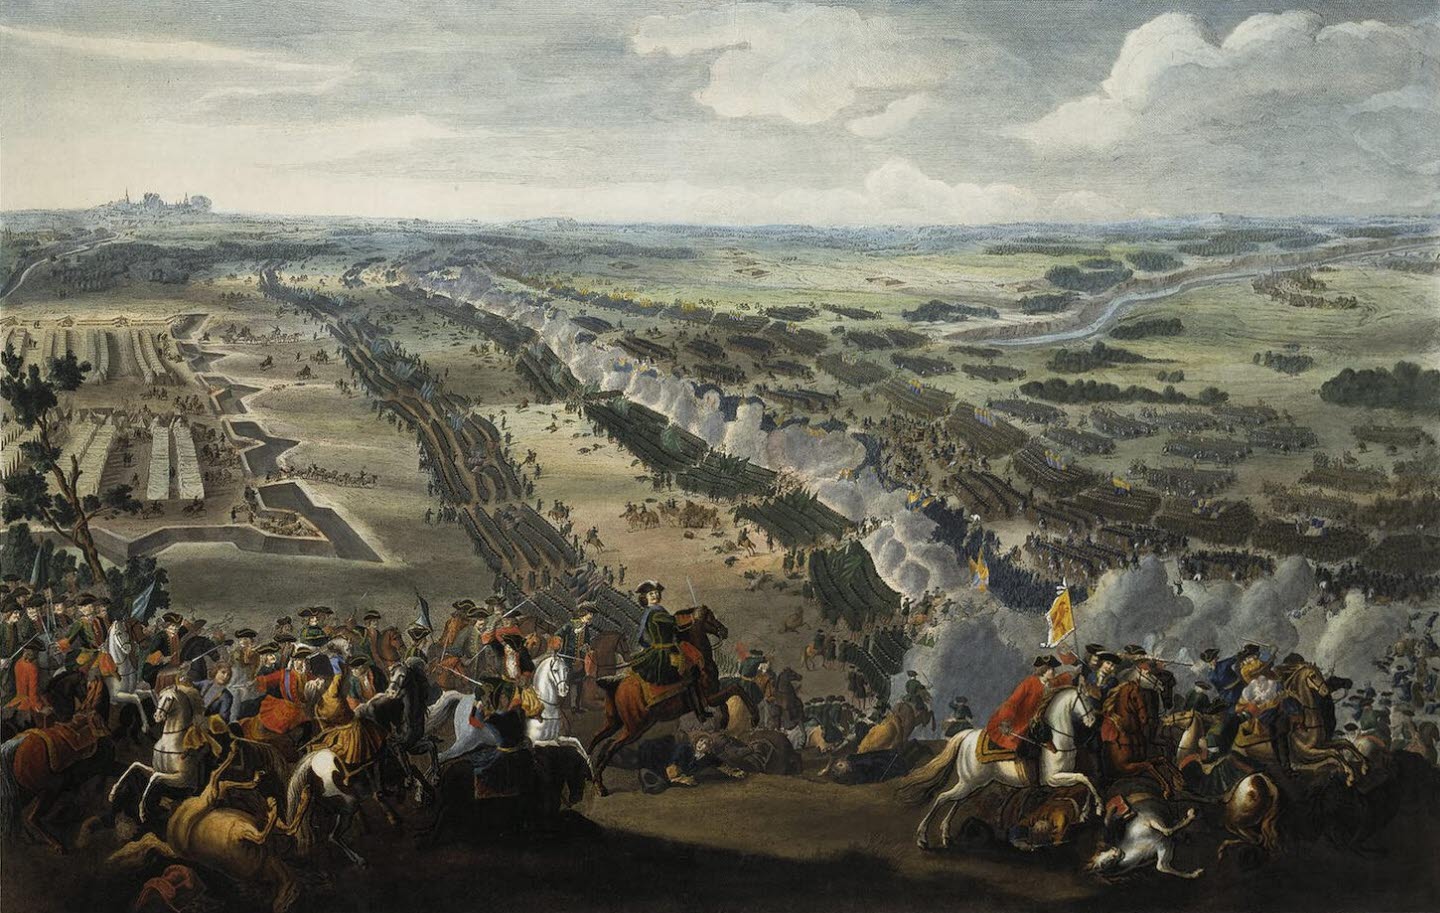 Slaget vid Poltava